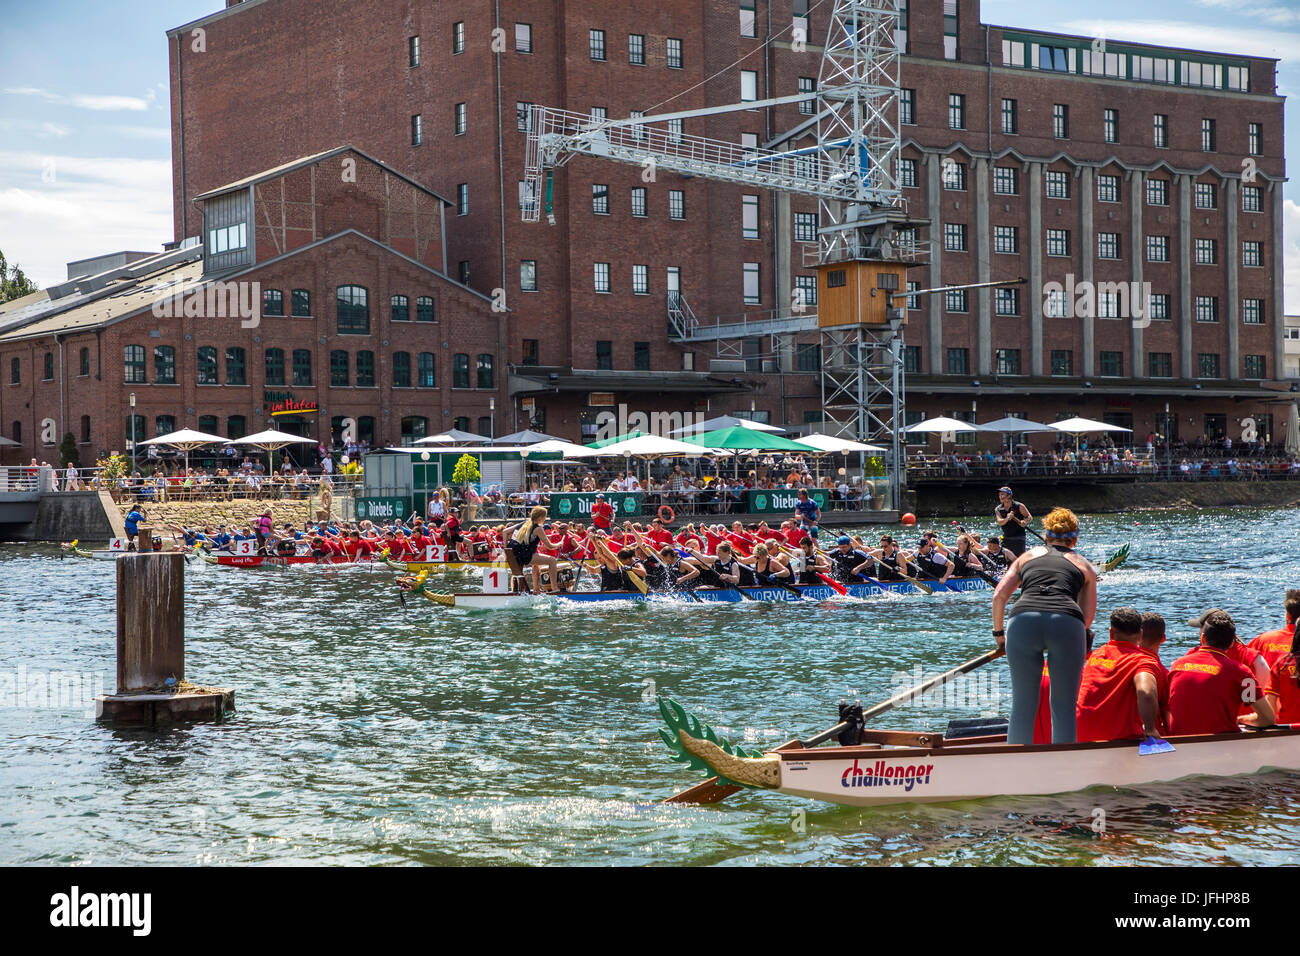 Drachenboot-Regatta in den inneren Hafen Duisburg, Deutschland, racing in der Landschaft der alten und Neubau Hafen, die größte Freizeit-Zeit-dragonboa Stockfoto